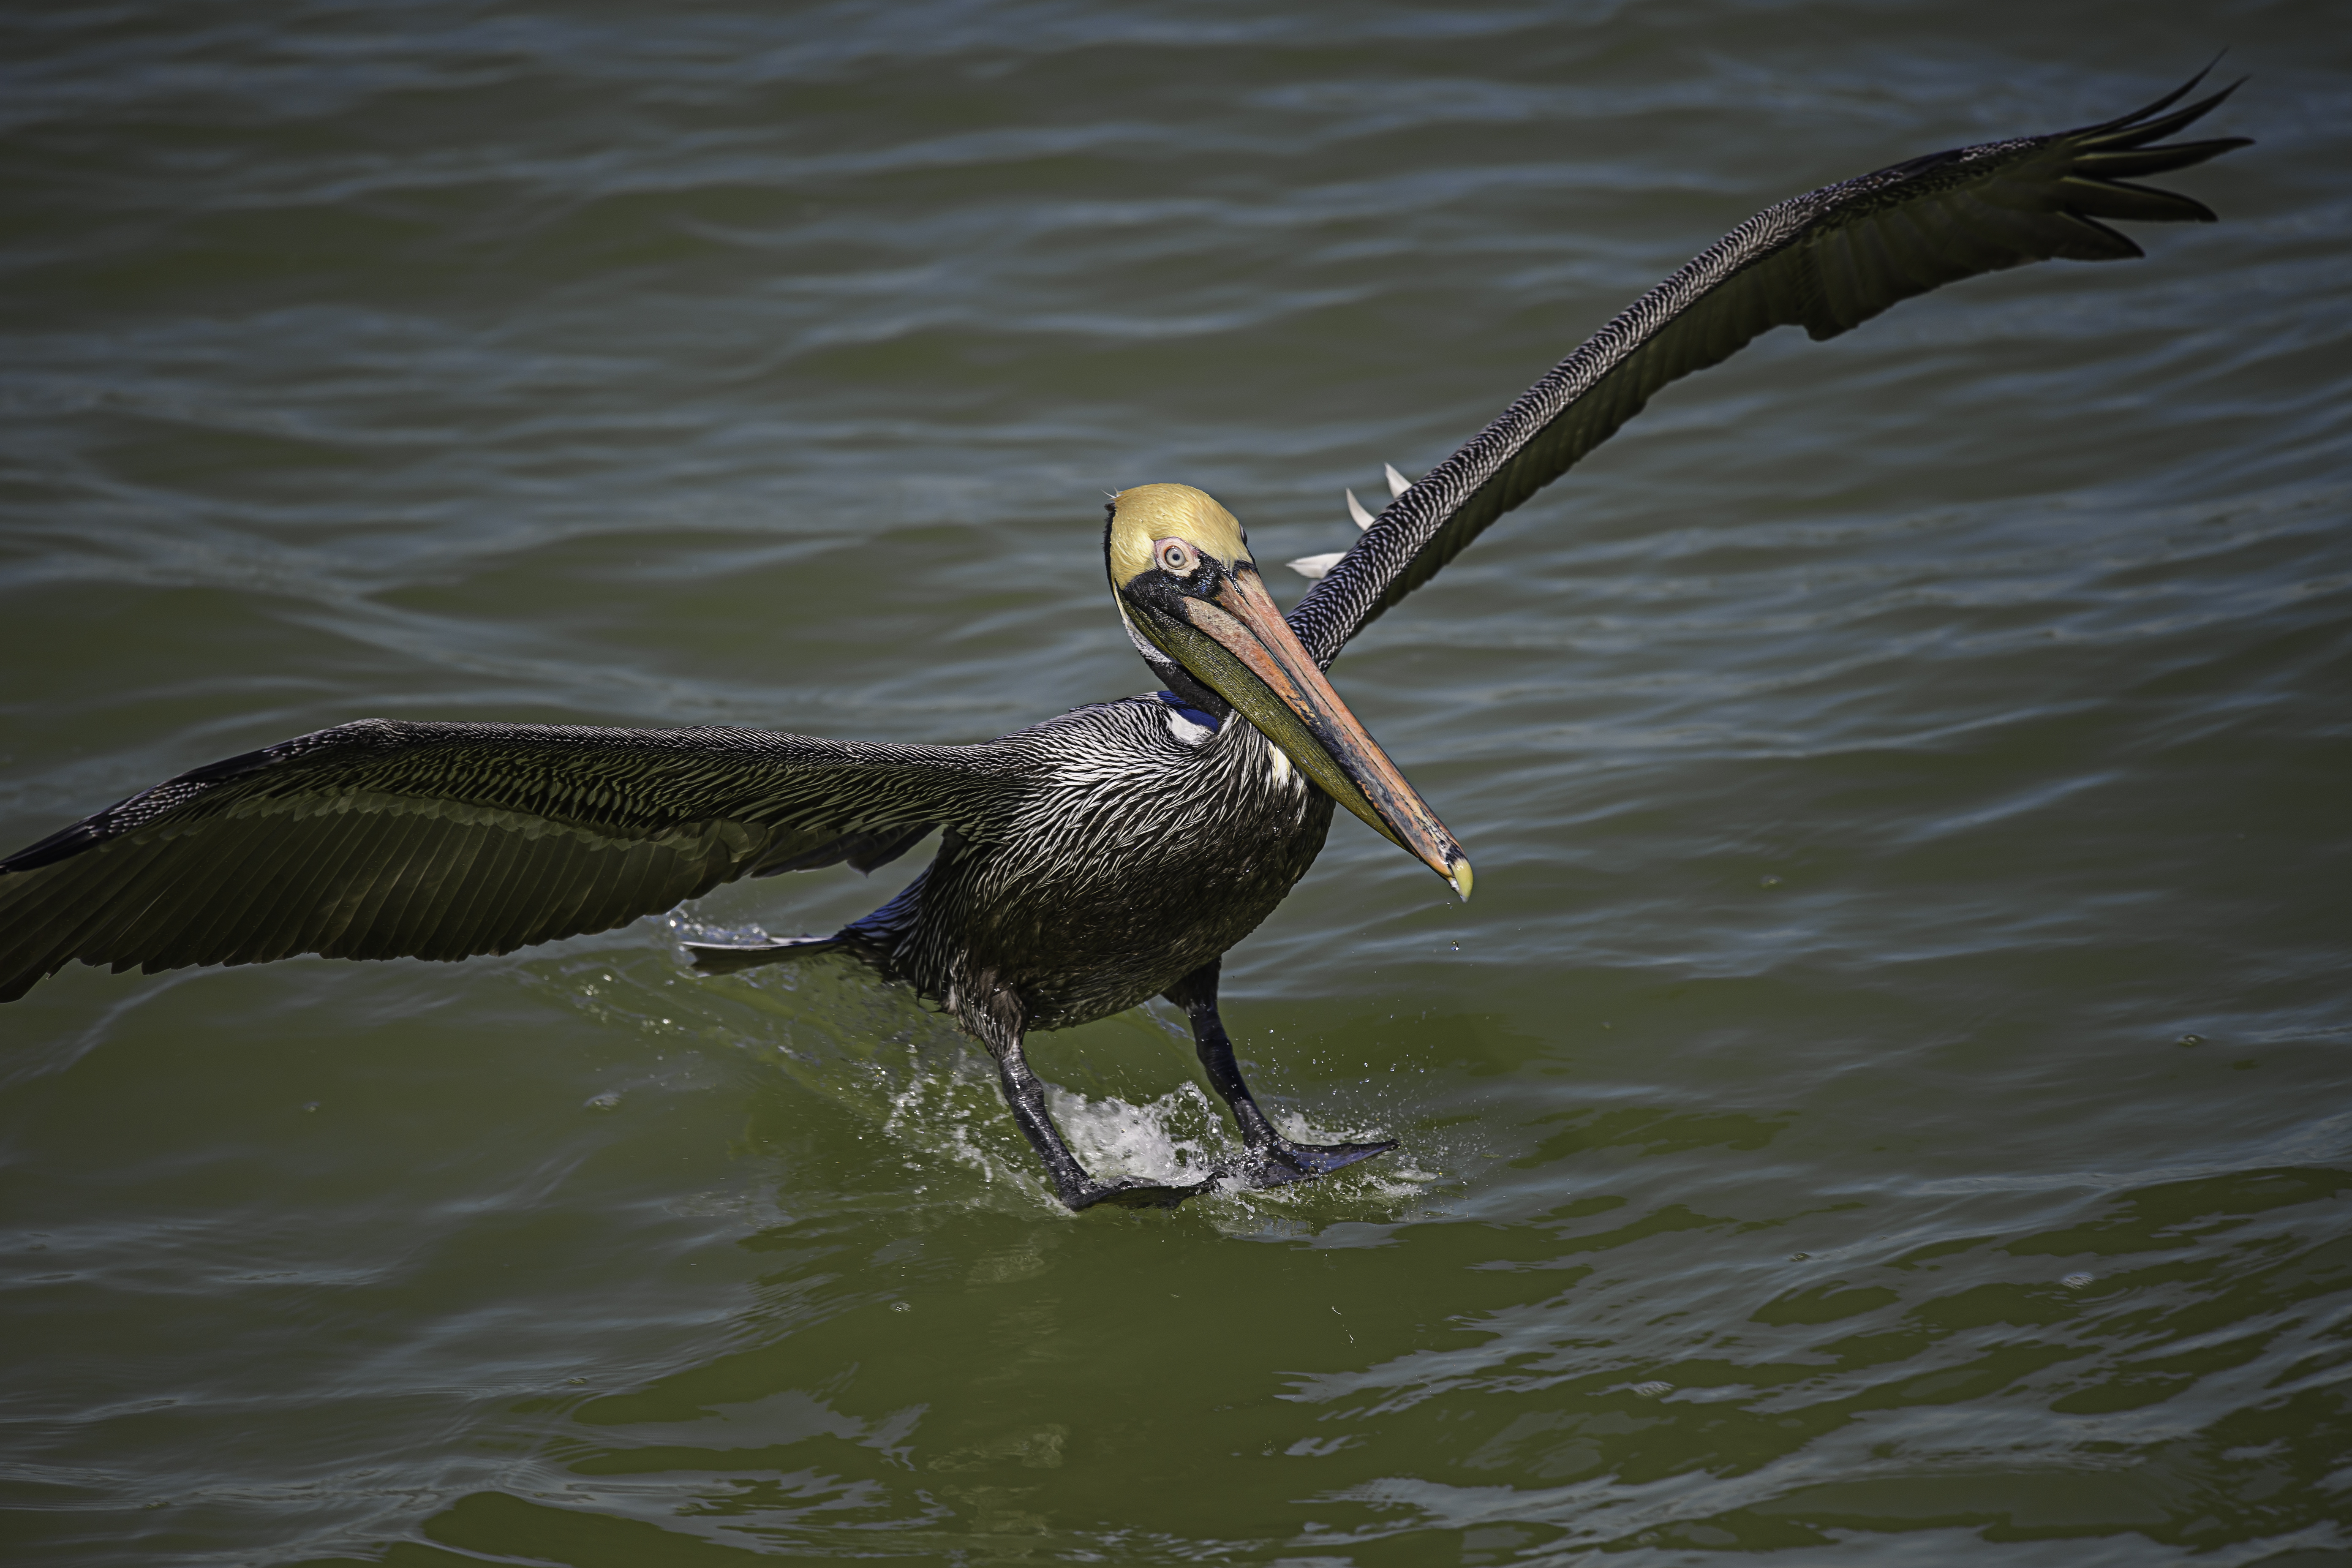 Florida brown pelican splashing down